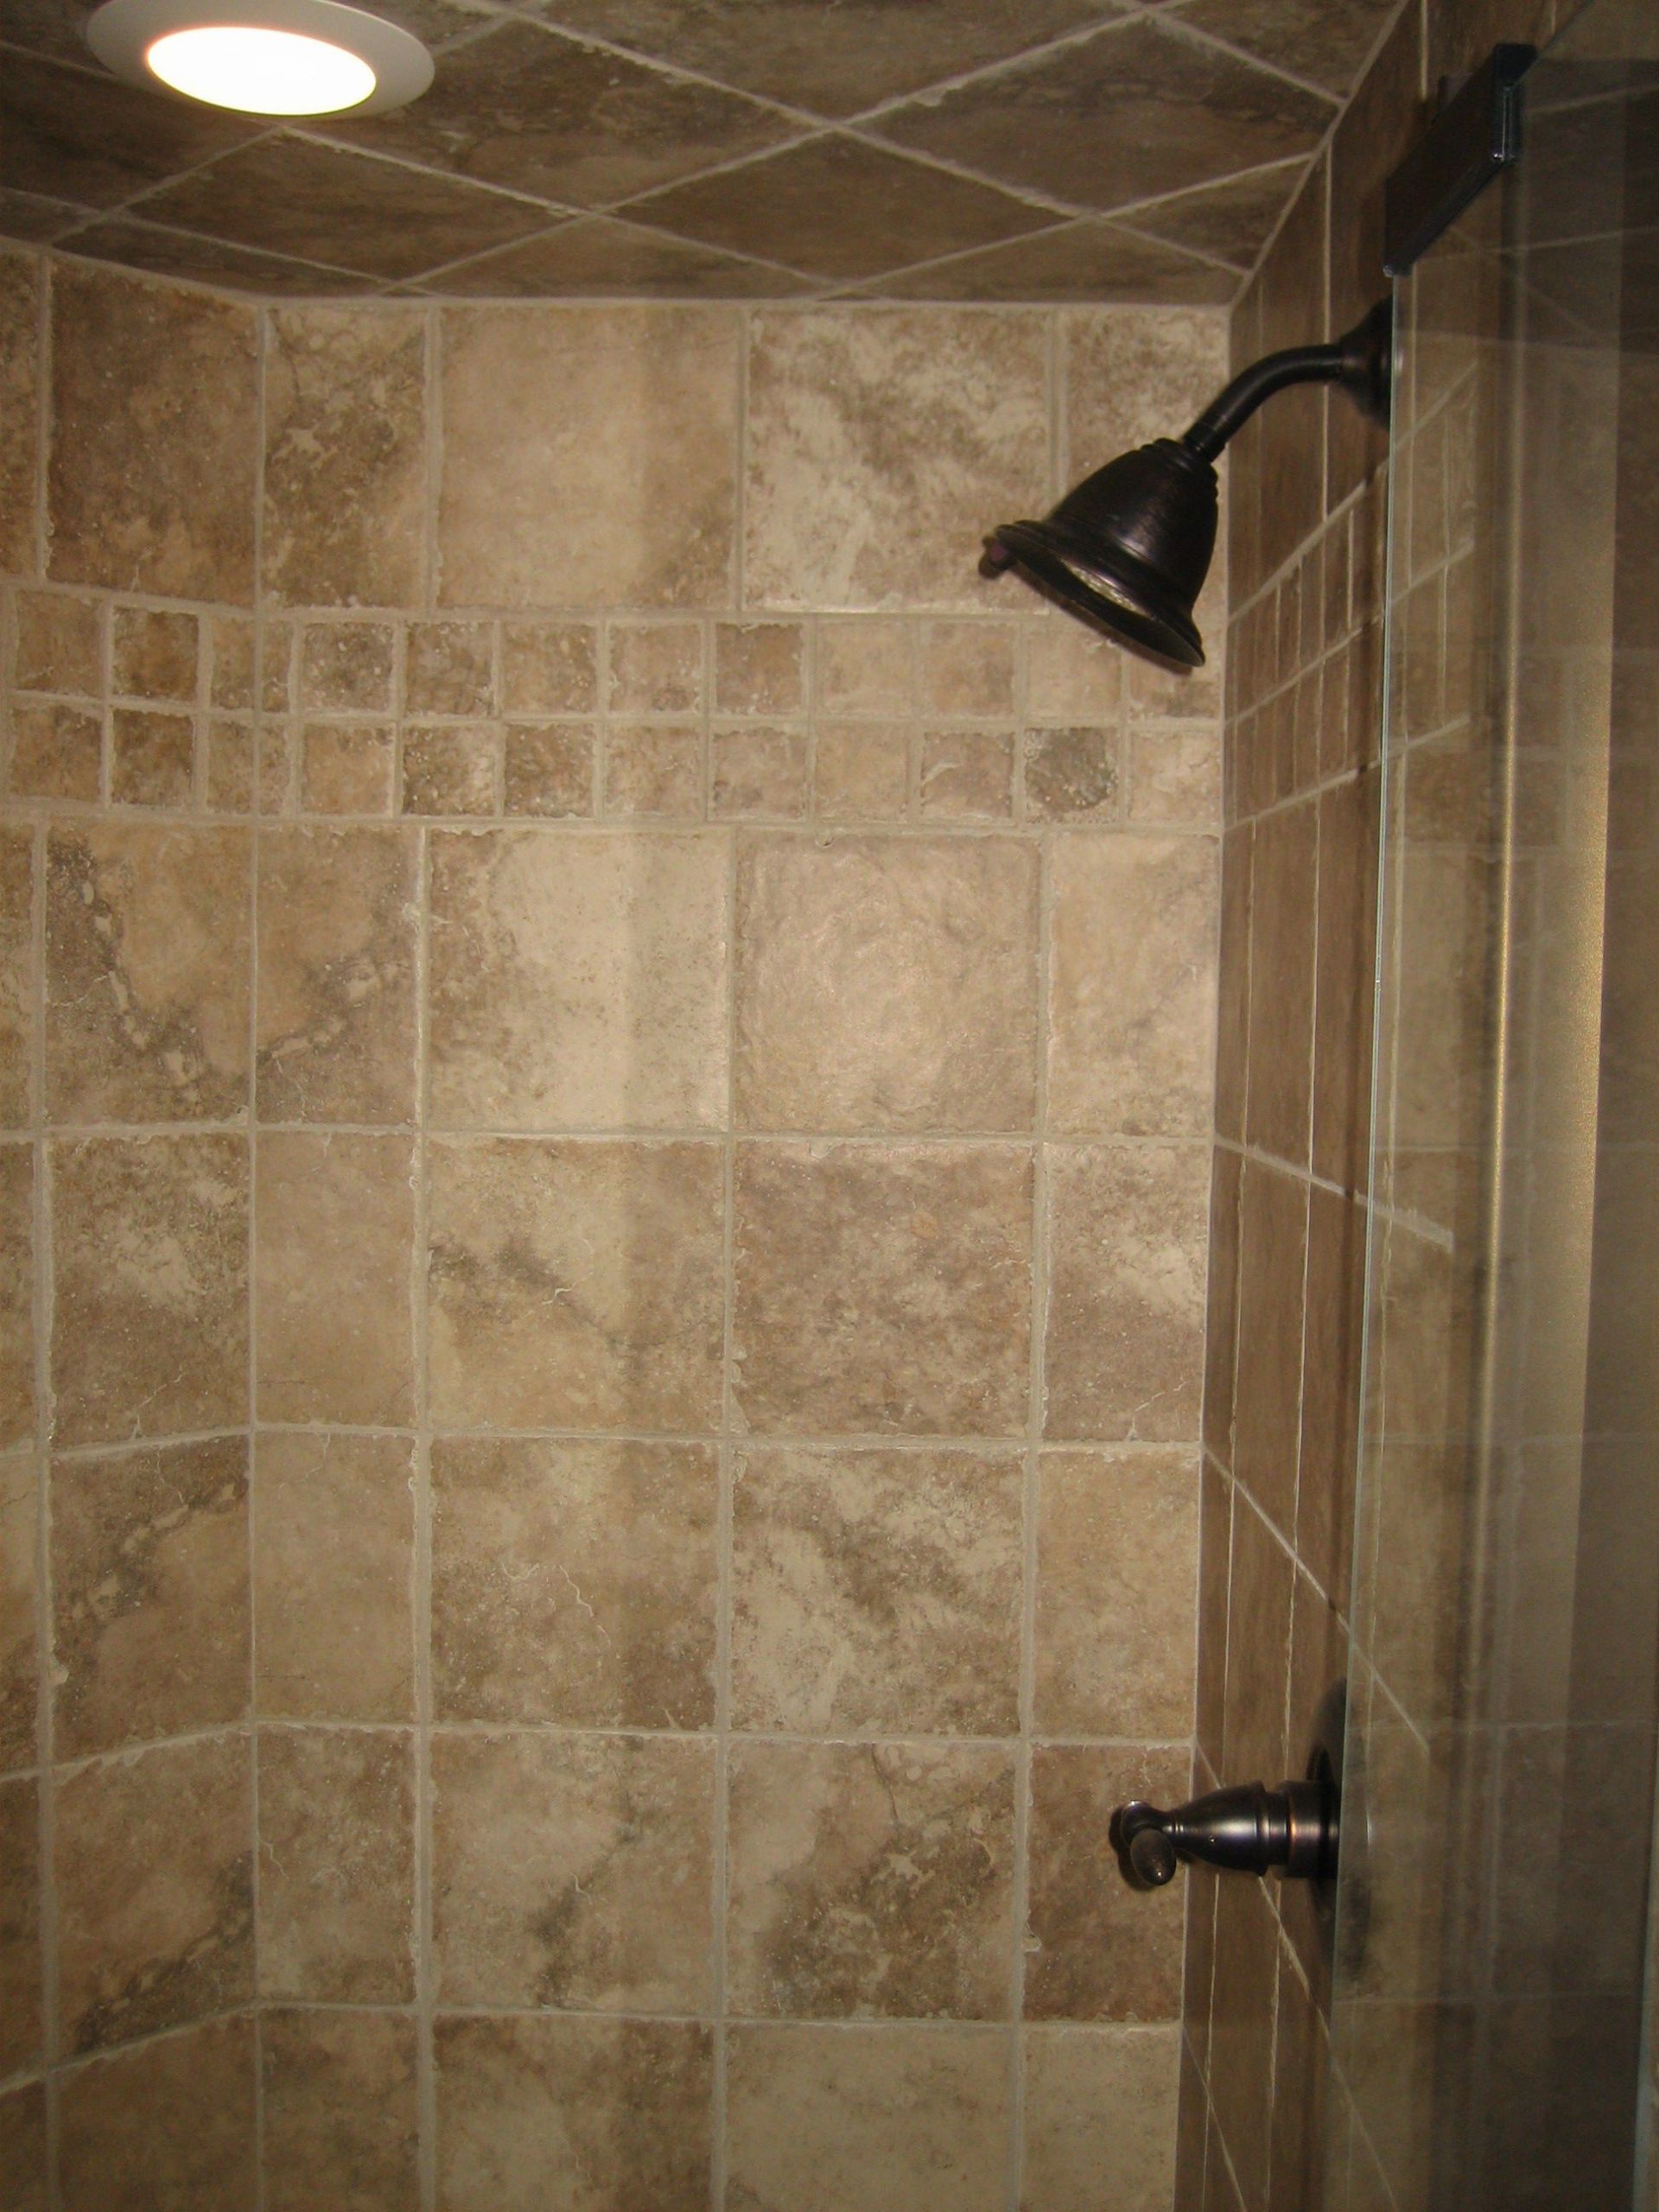 Bathroom Shower Tile Gallery
 Bathroom Interesting Shower Tile Designs With Fascinating